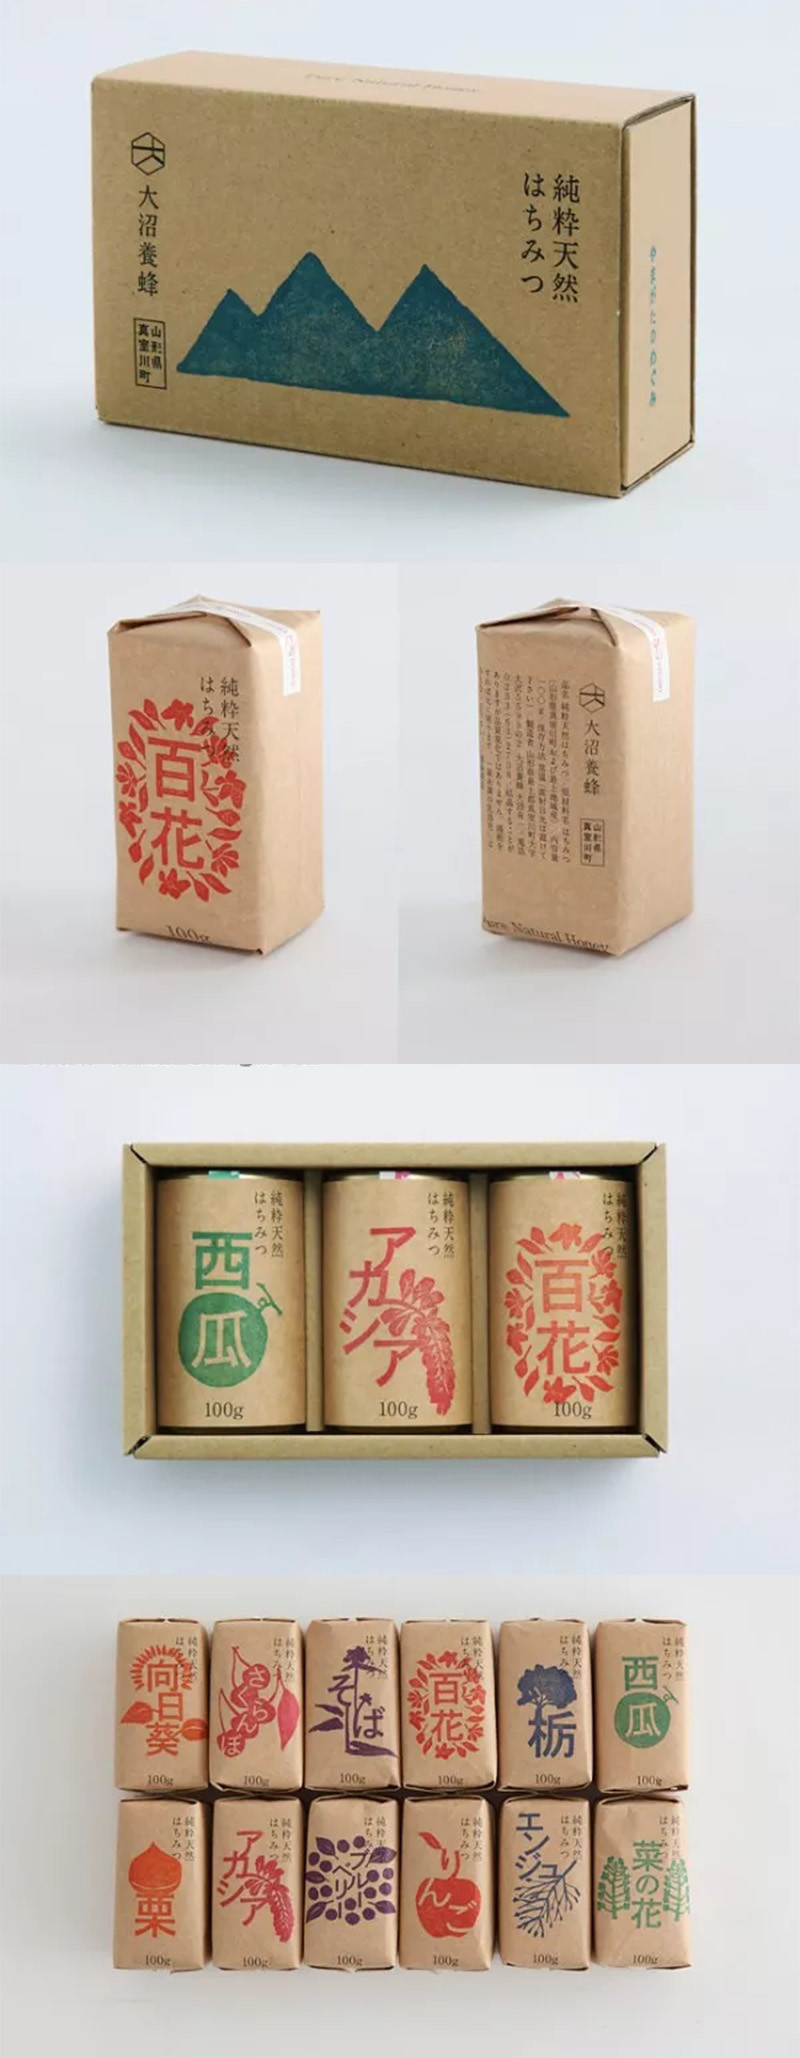 牛卡纸包装盒蜂蜜包装盒设计